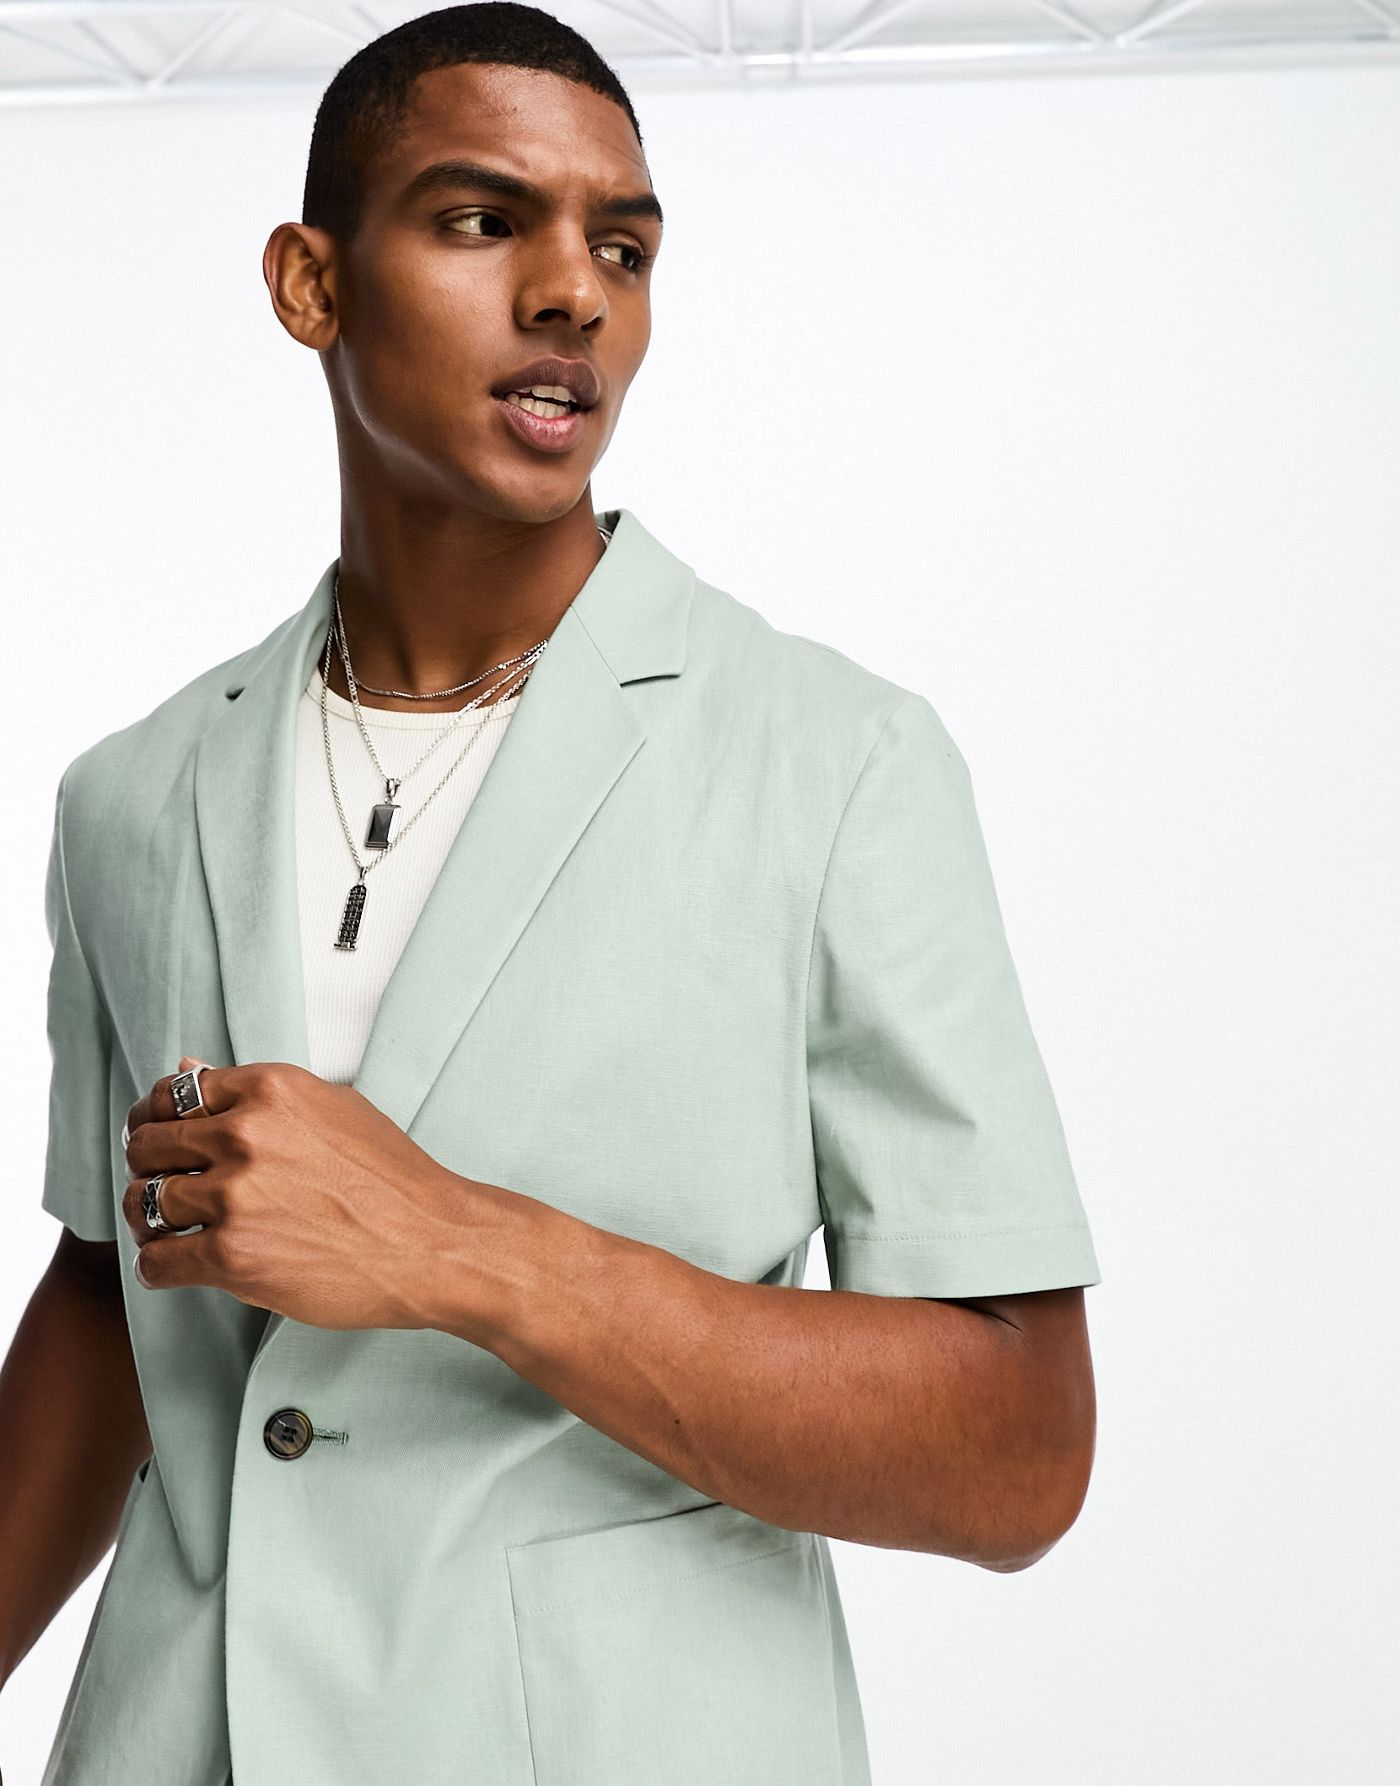 ASOS DESIGN short sleeved linen mix suit jacket in sage